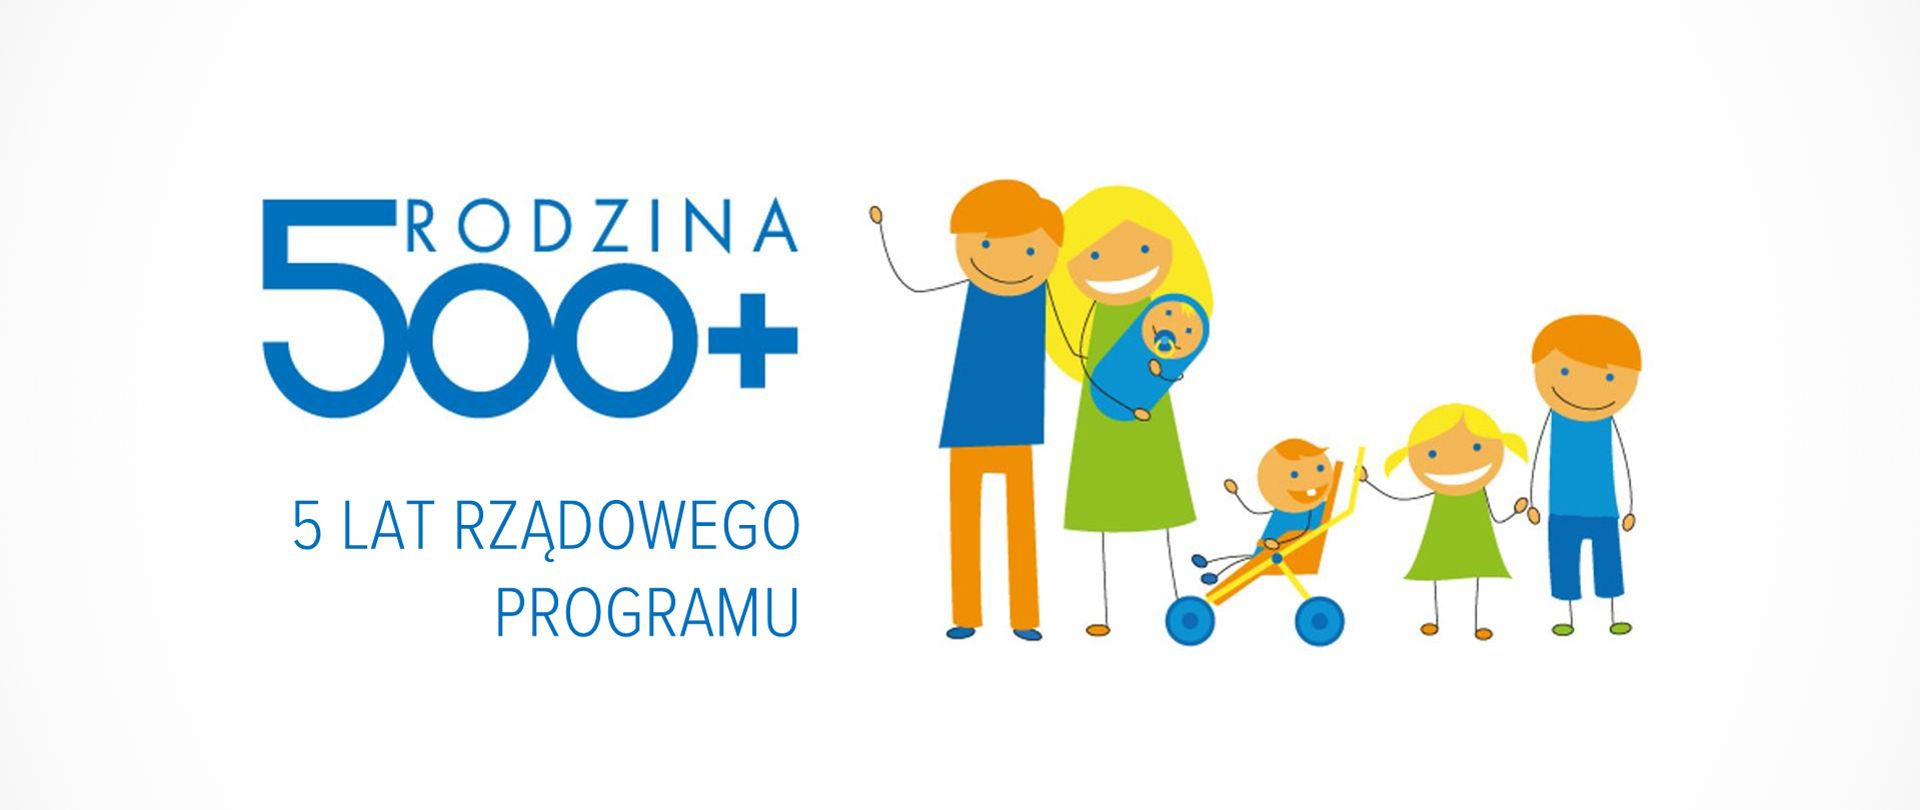 Grafika hasłem "Rodzina 500+ – 5 lat rządowego programu" i ilustracją wielodzietnej rodziny